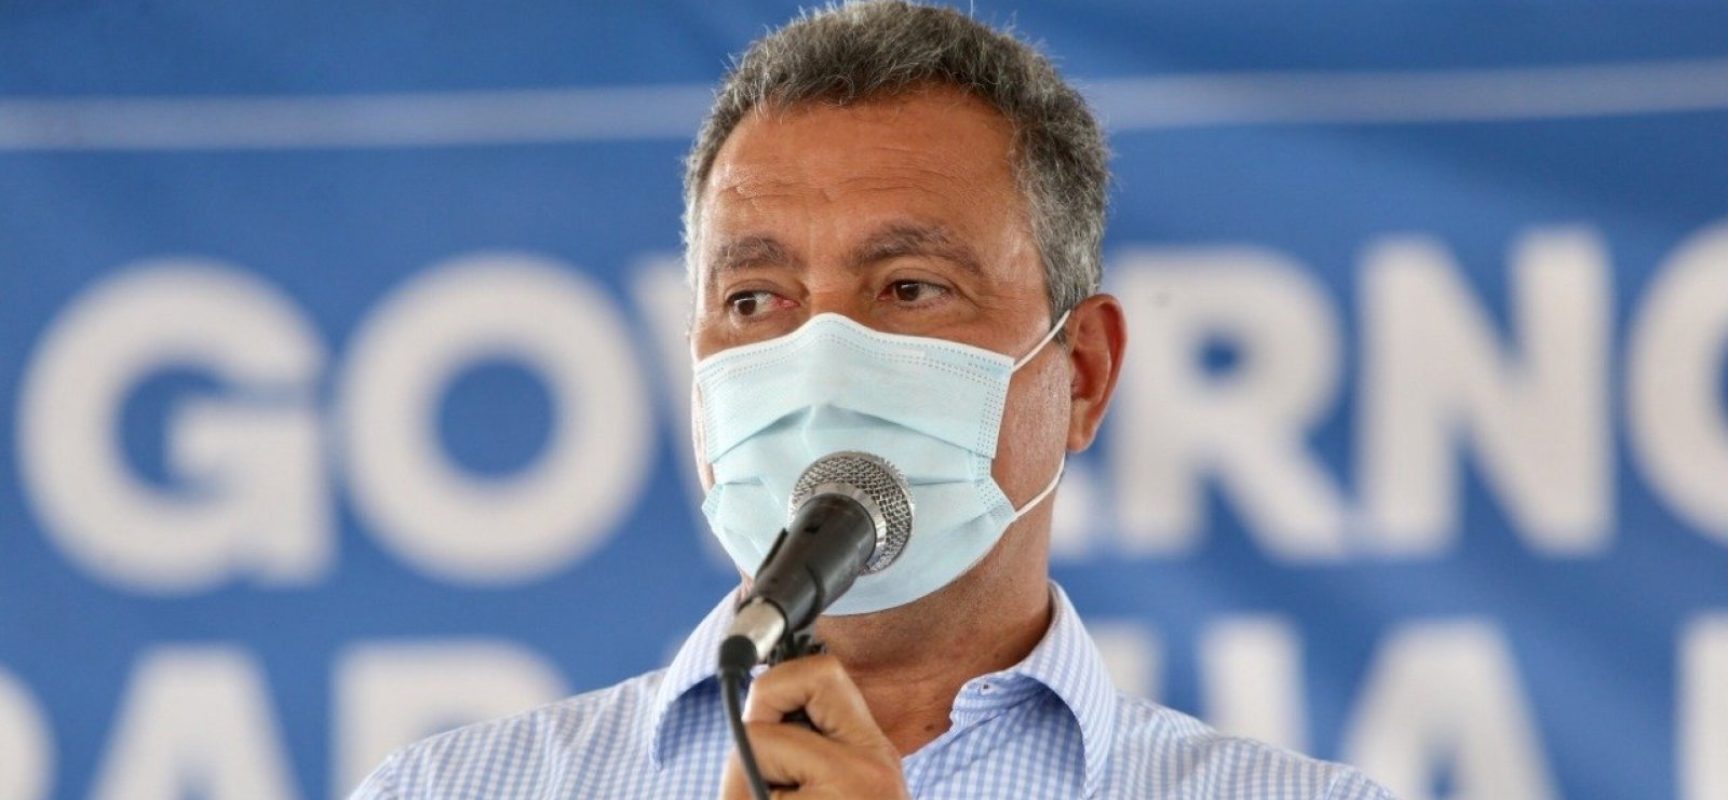 ‘Não iremos nos intimidar’, diz Rui Costa sobre repercussão de morte de PM